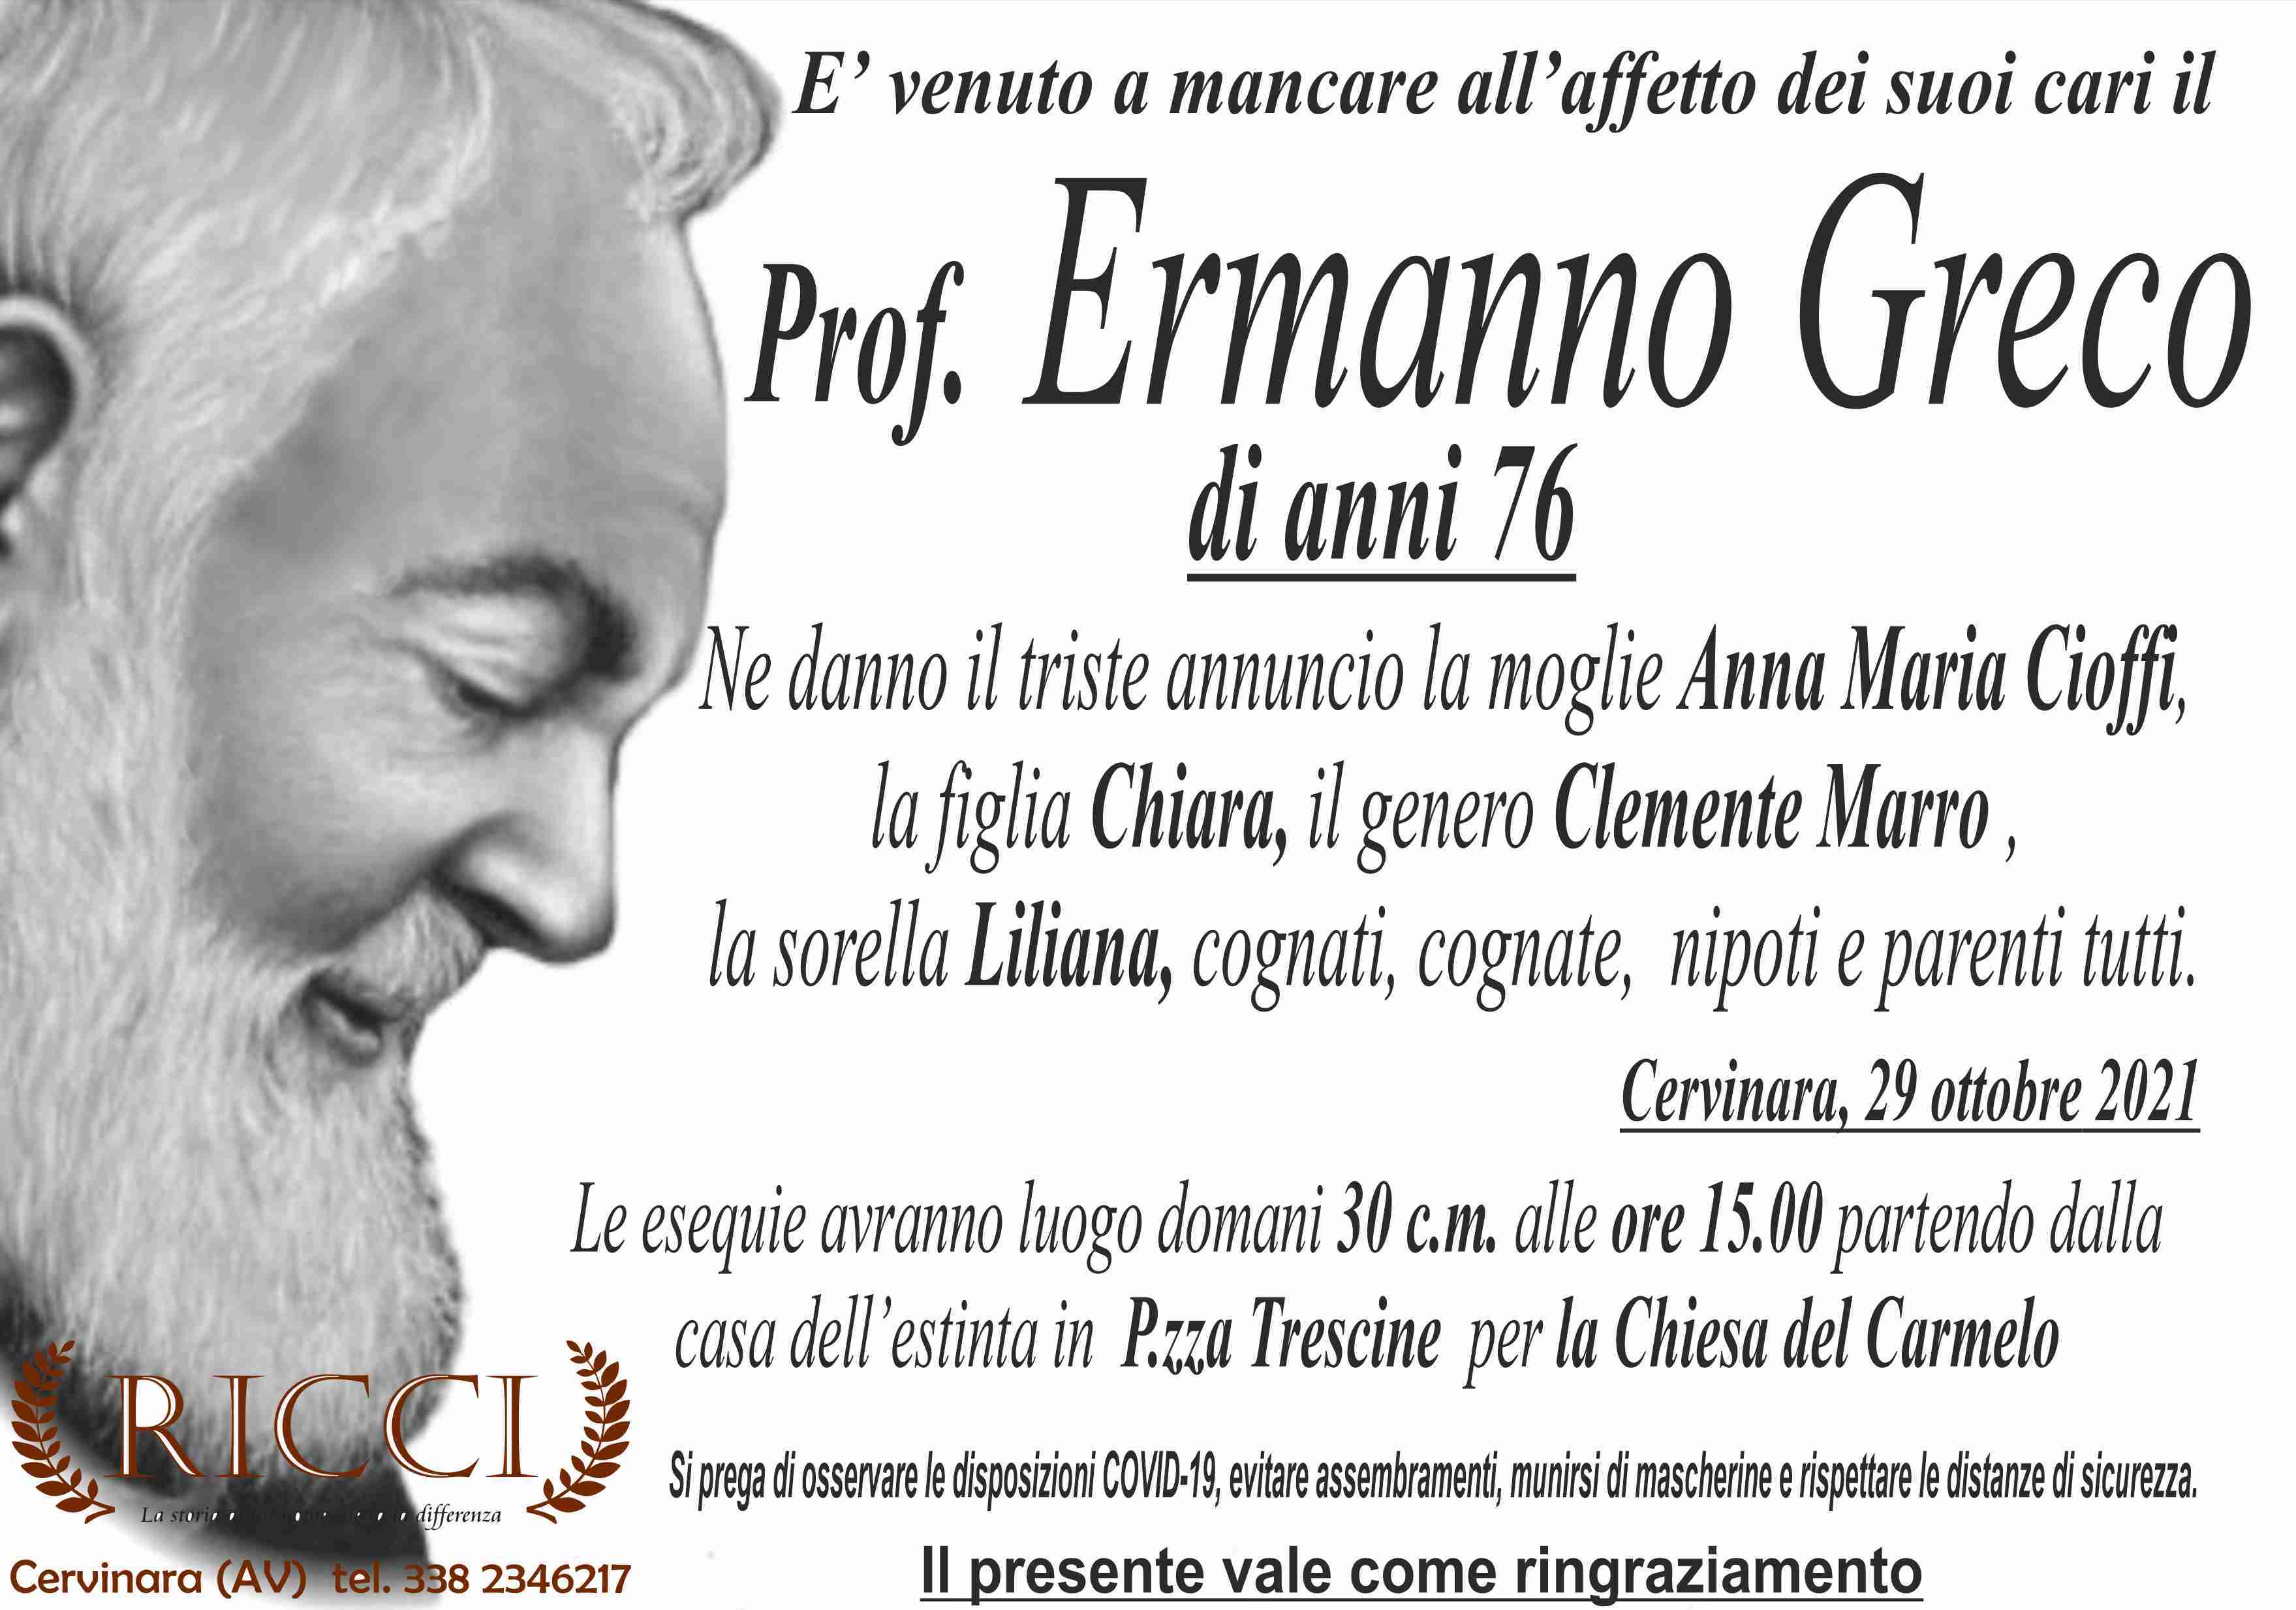 Ermanno Greco